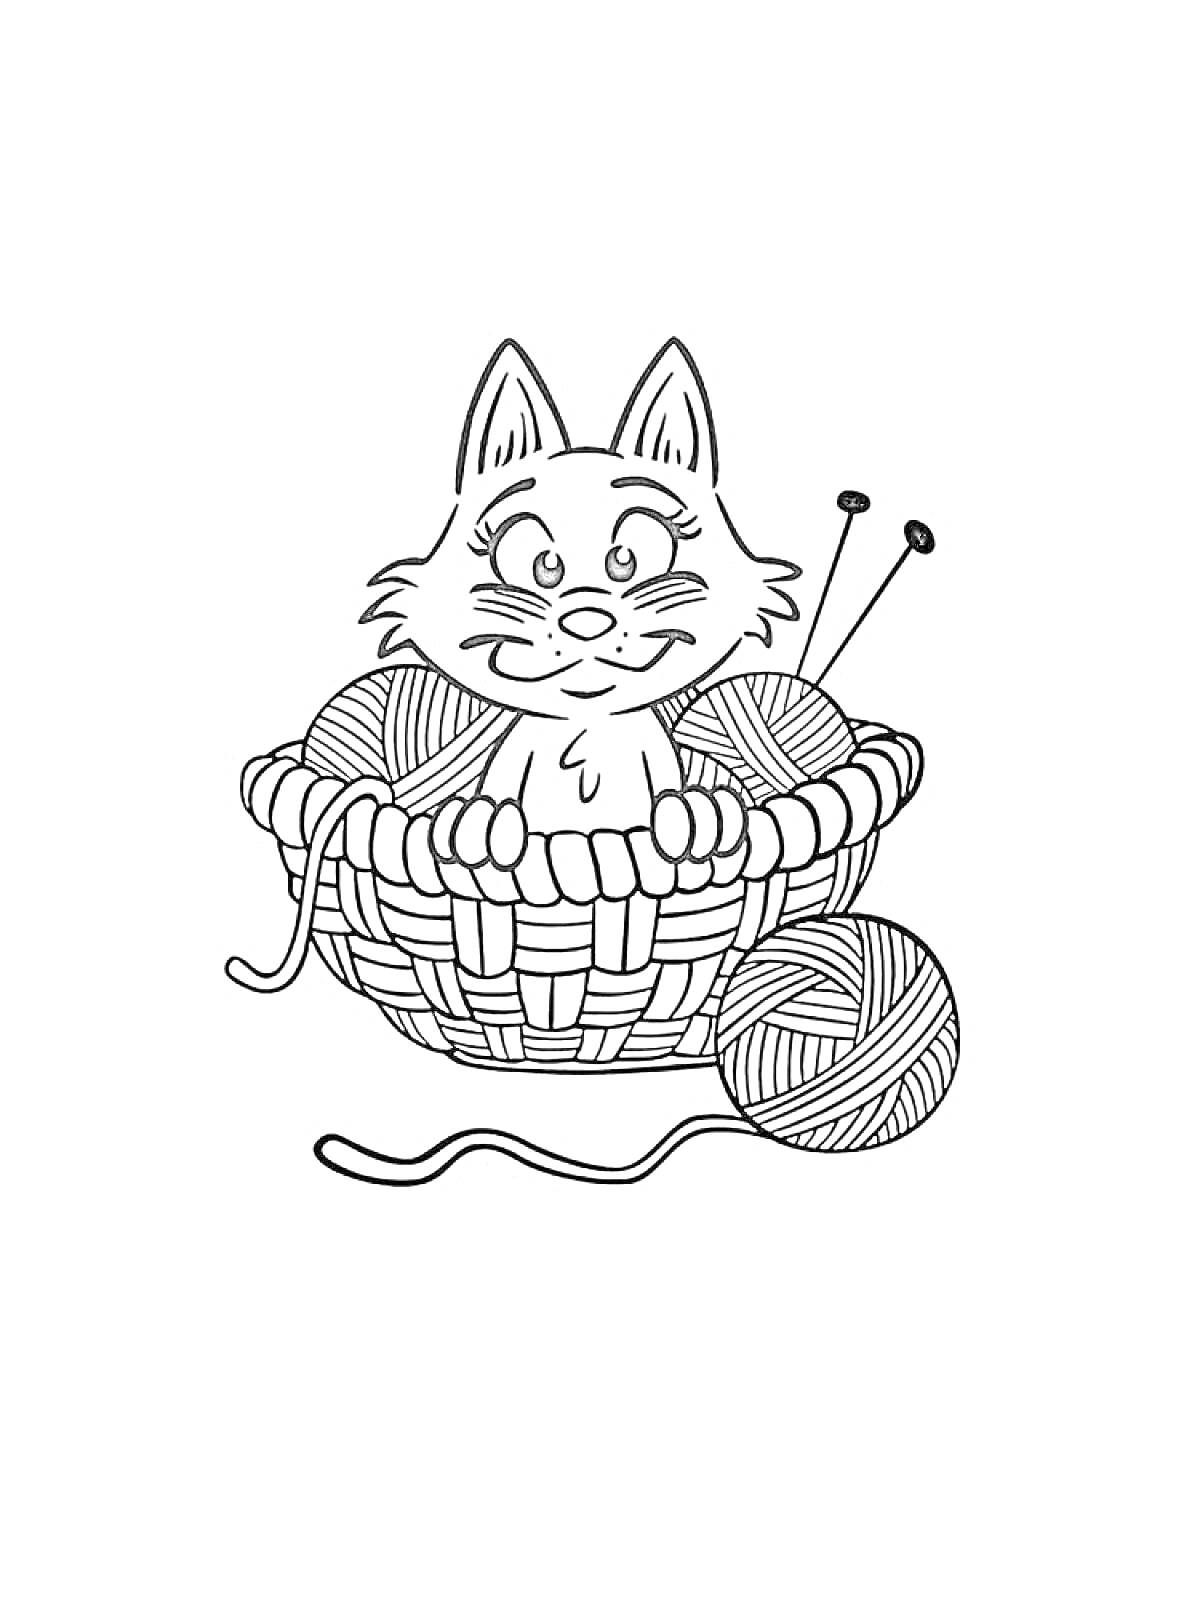 Раскраска Кошка в корзине с клубками ниток и вязальными спицами